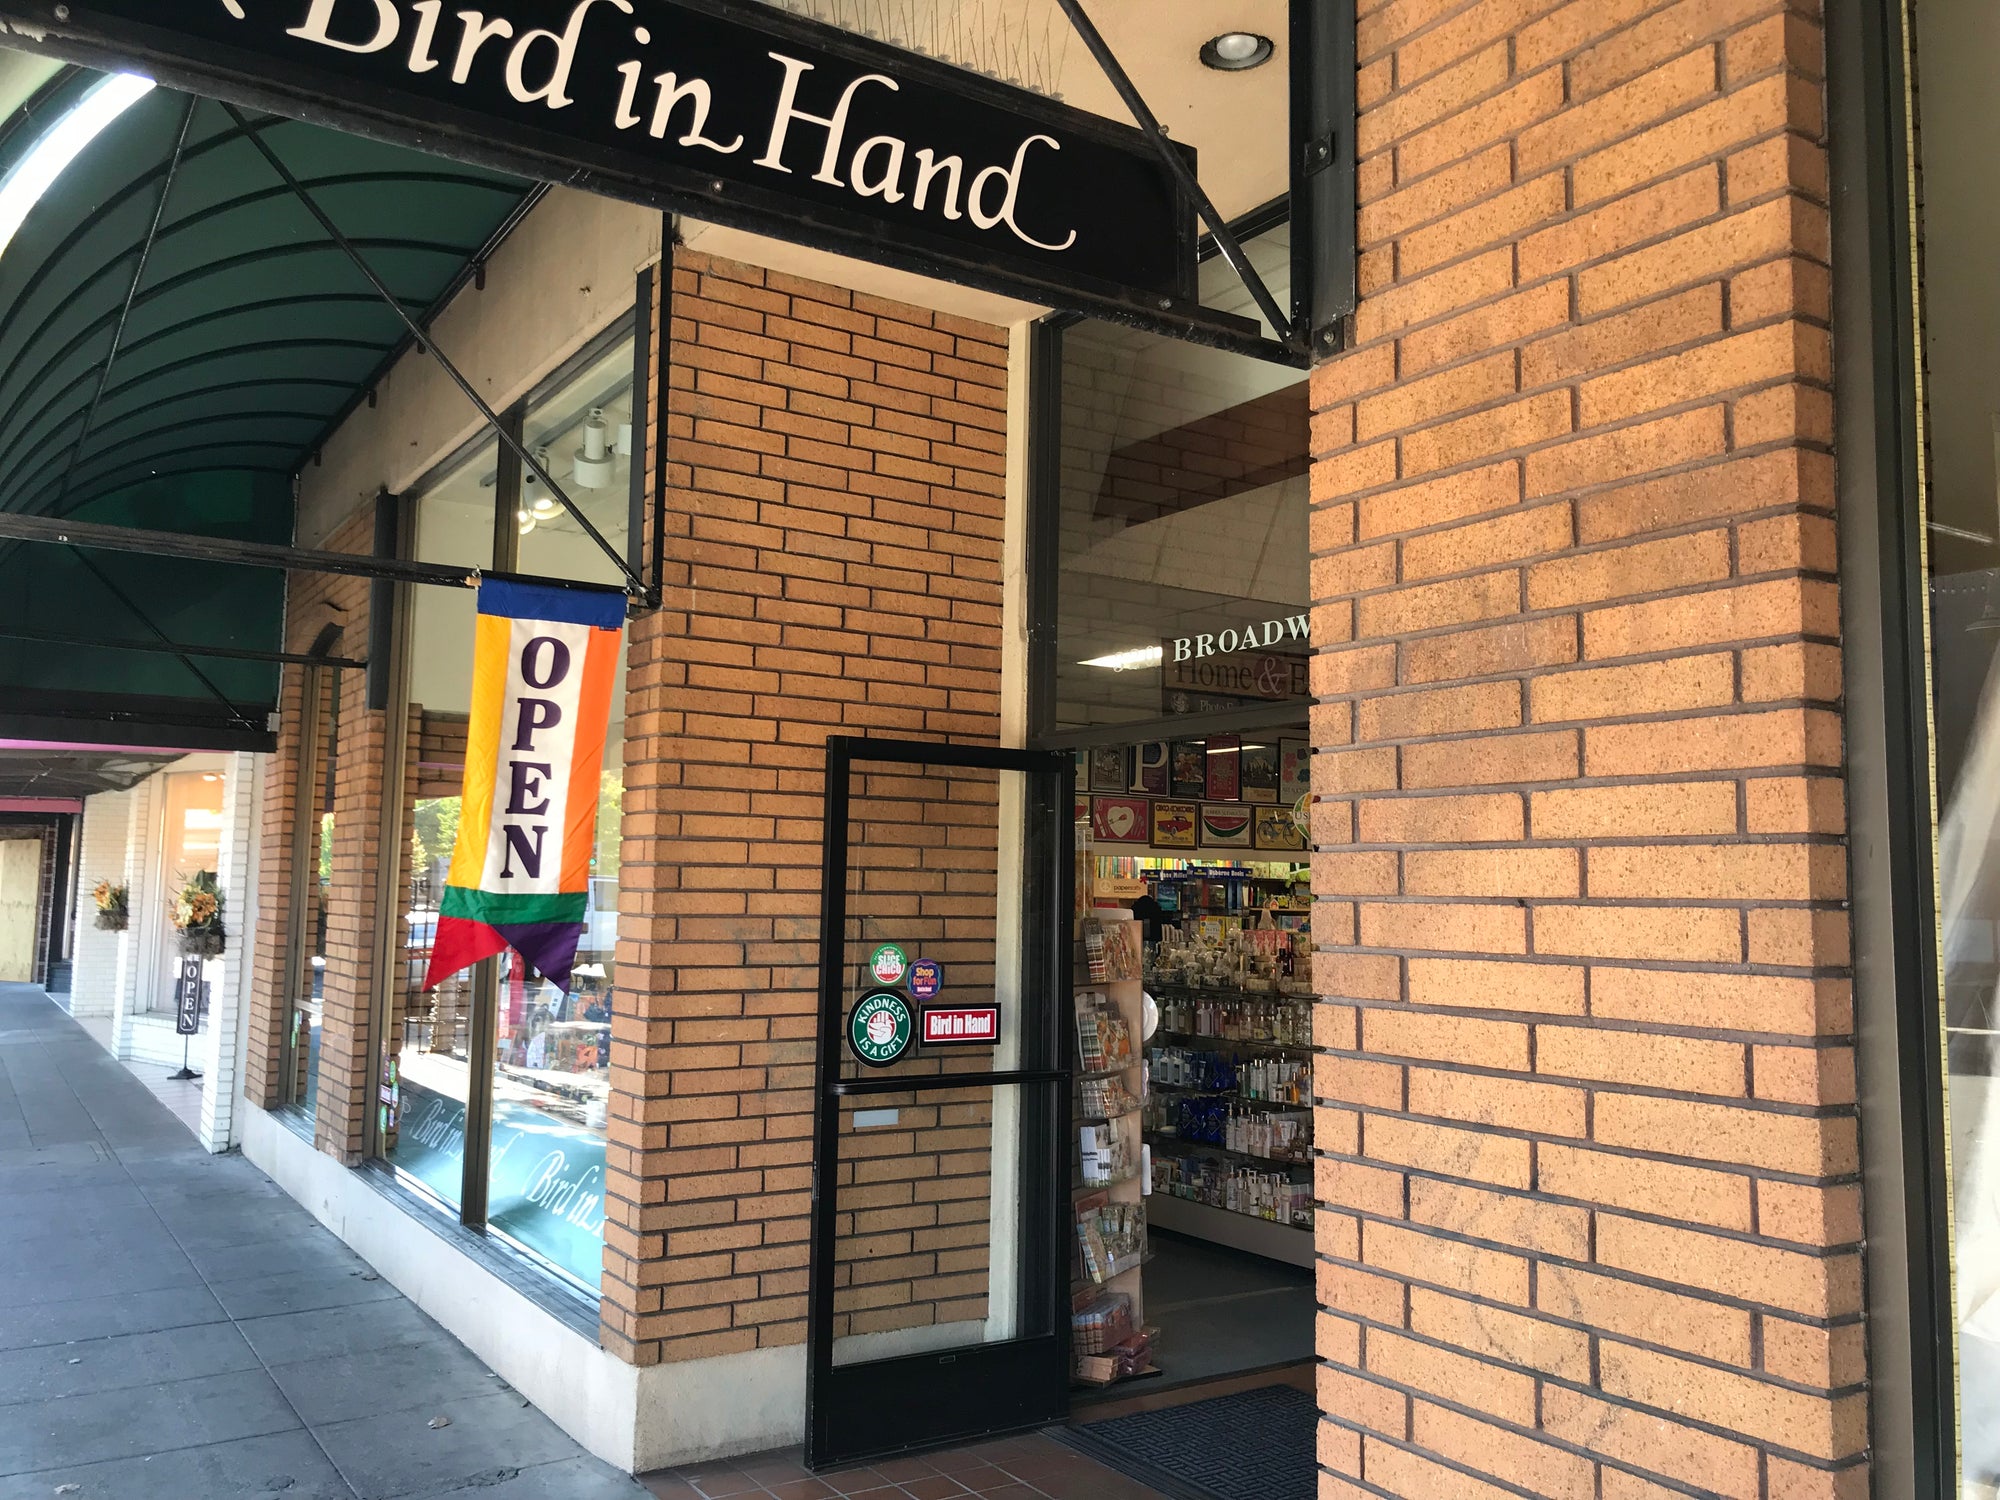 Bird in Hand front door